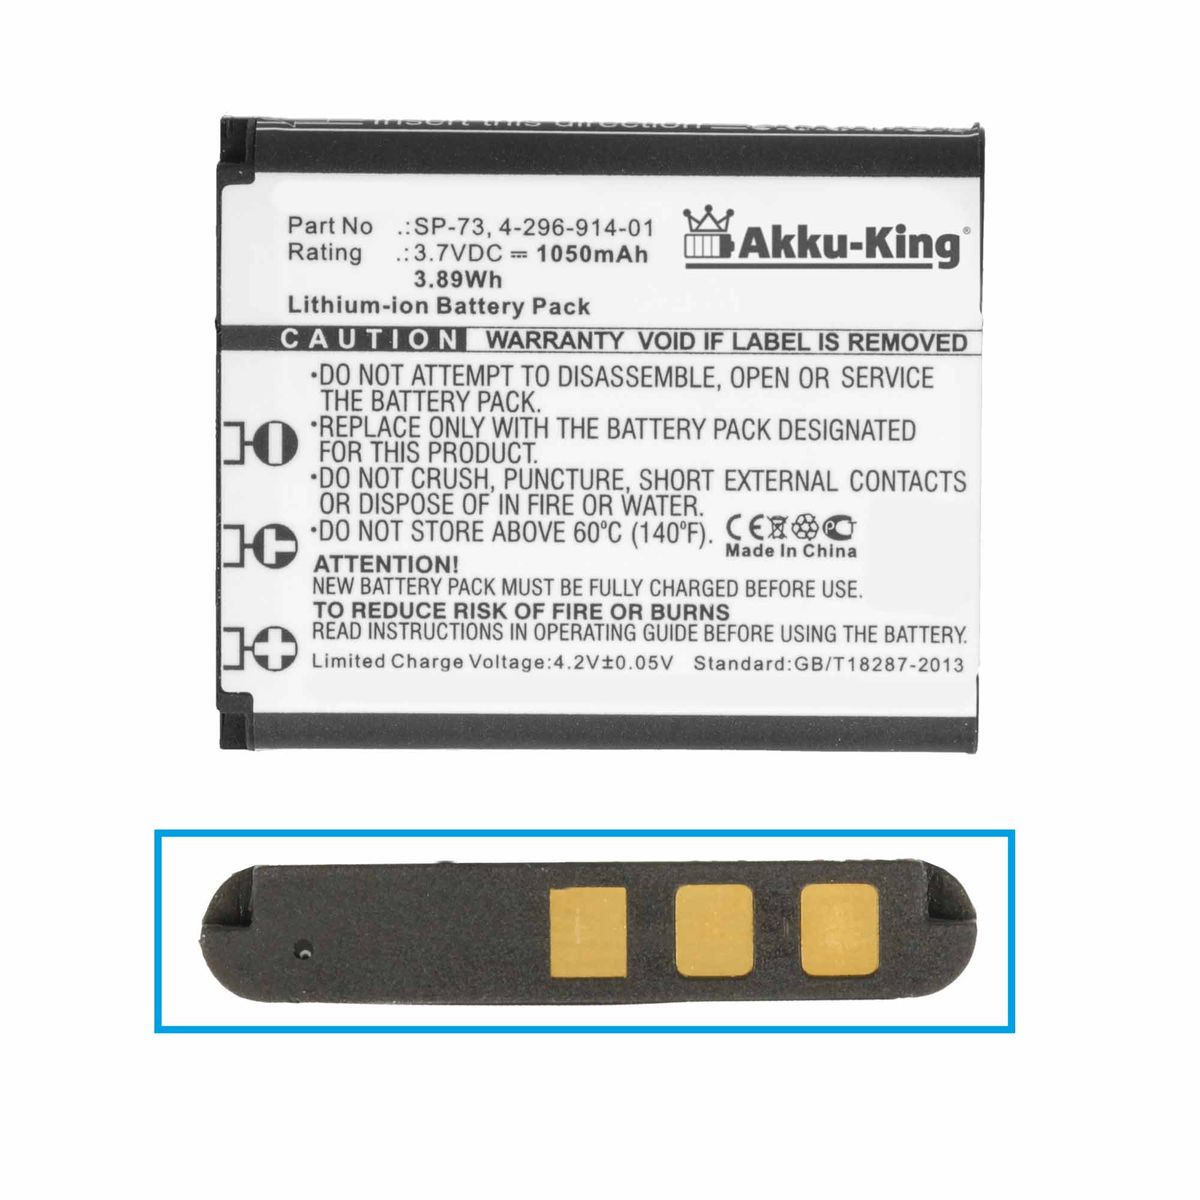 AKKU-KING Akku kompatibel mit Li-Ion Geräte-Akku, Sony Volt, SP-73 1050mAh 3.7